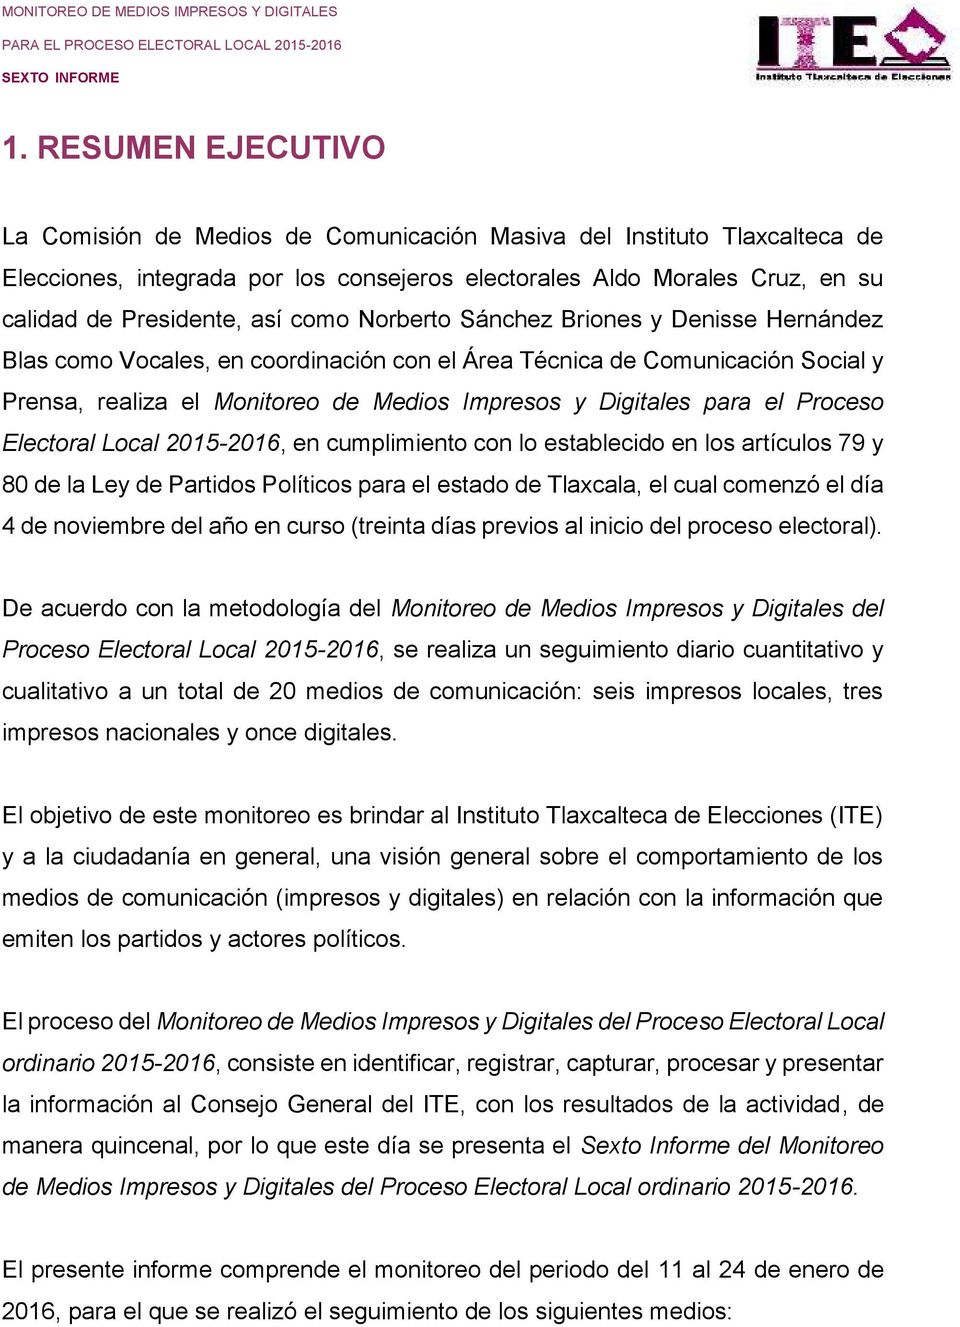 Proceso Electoral Local 2015-2016, en cumplimiento con lo establecido en los artículos 79 y 80 de la Ley de Partidos Políticos para el estado de Tlaxcala, el cual comenzó el día 4 de noviembre del